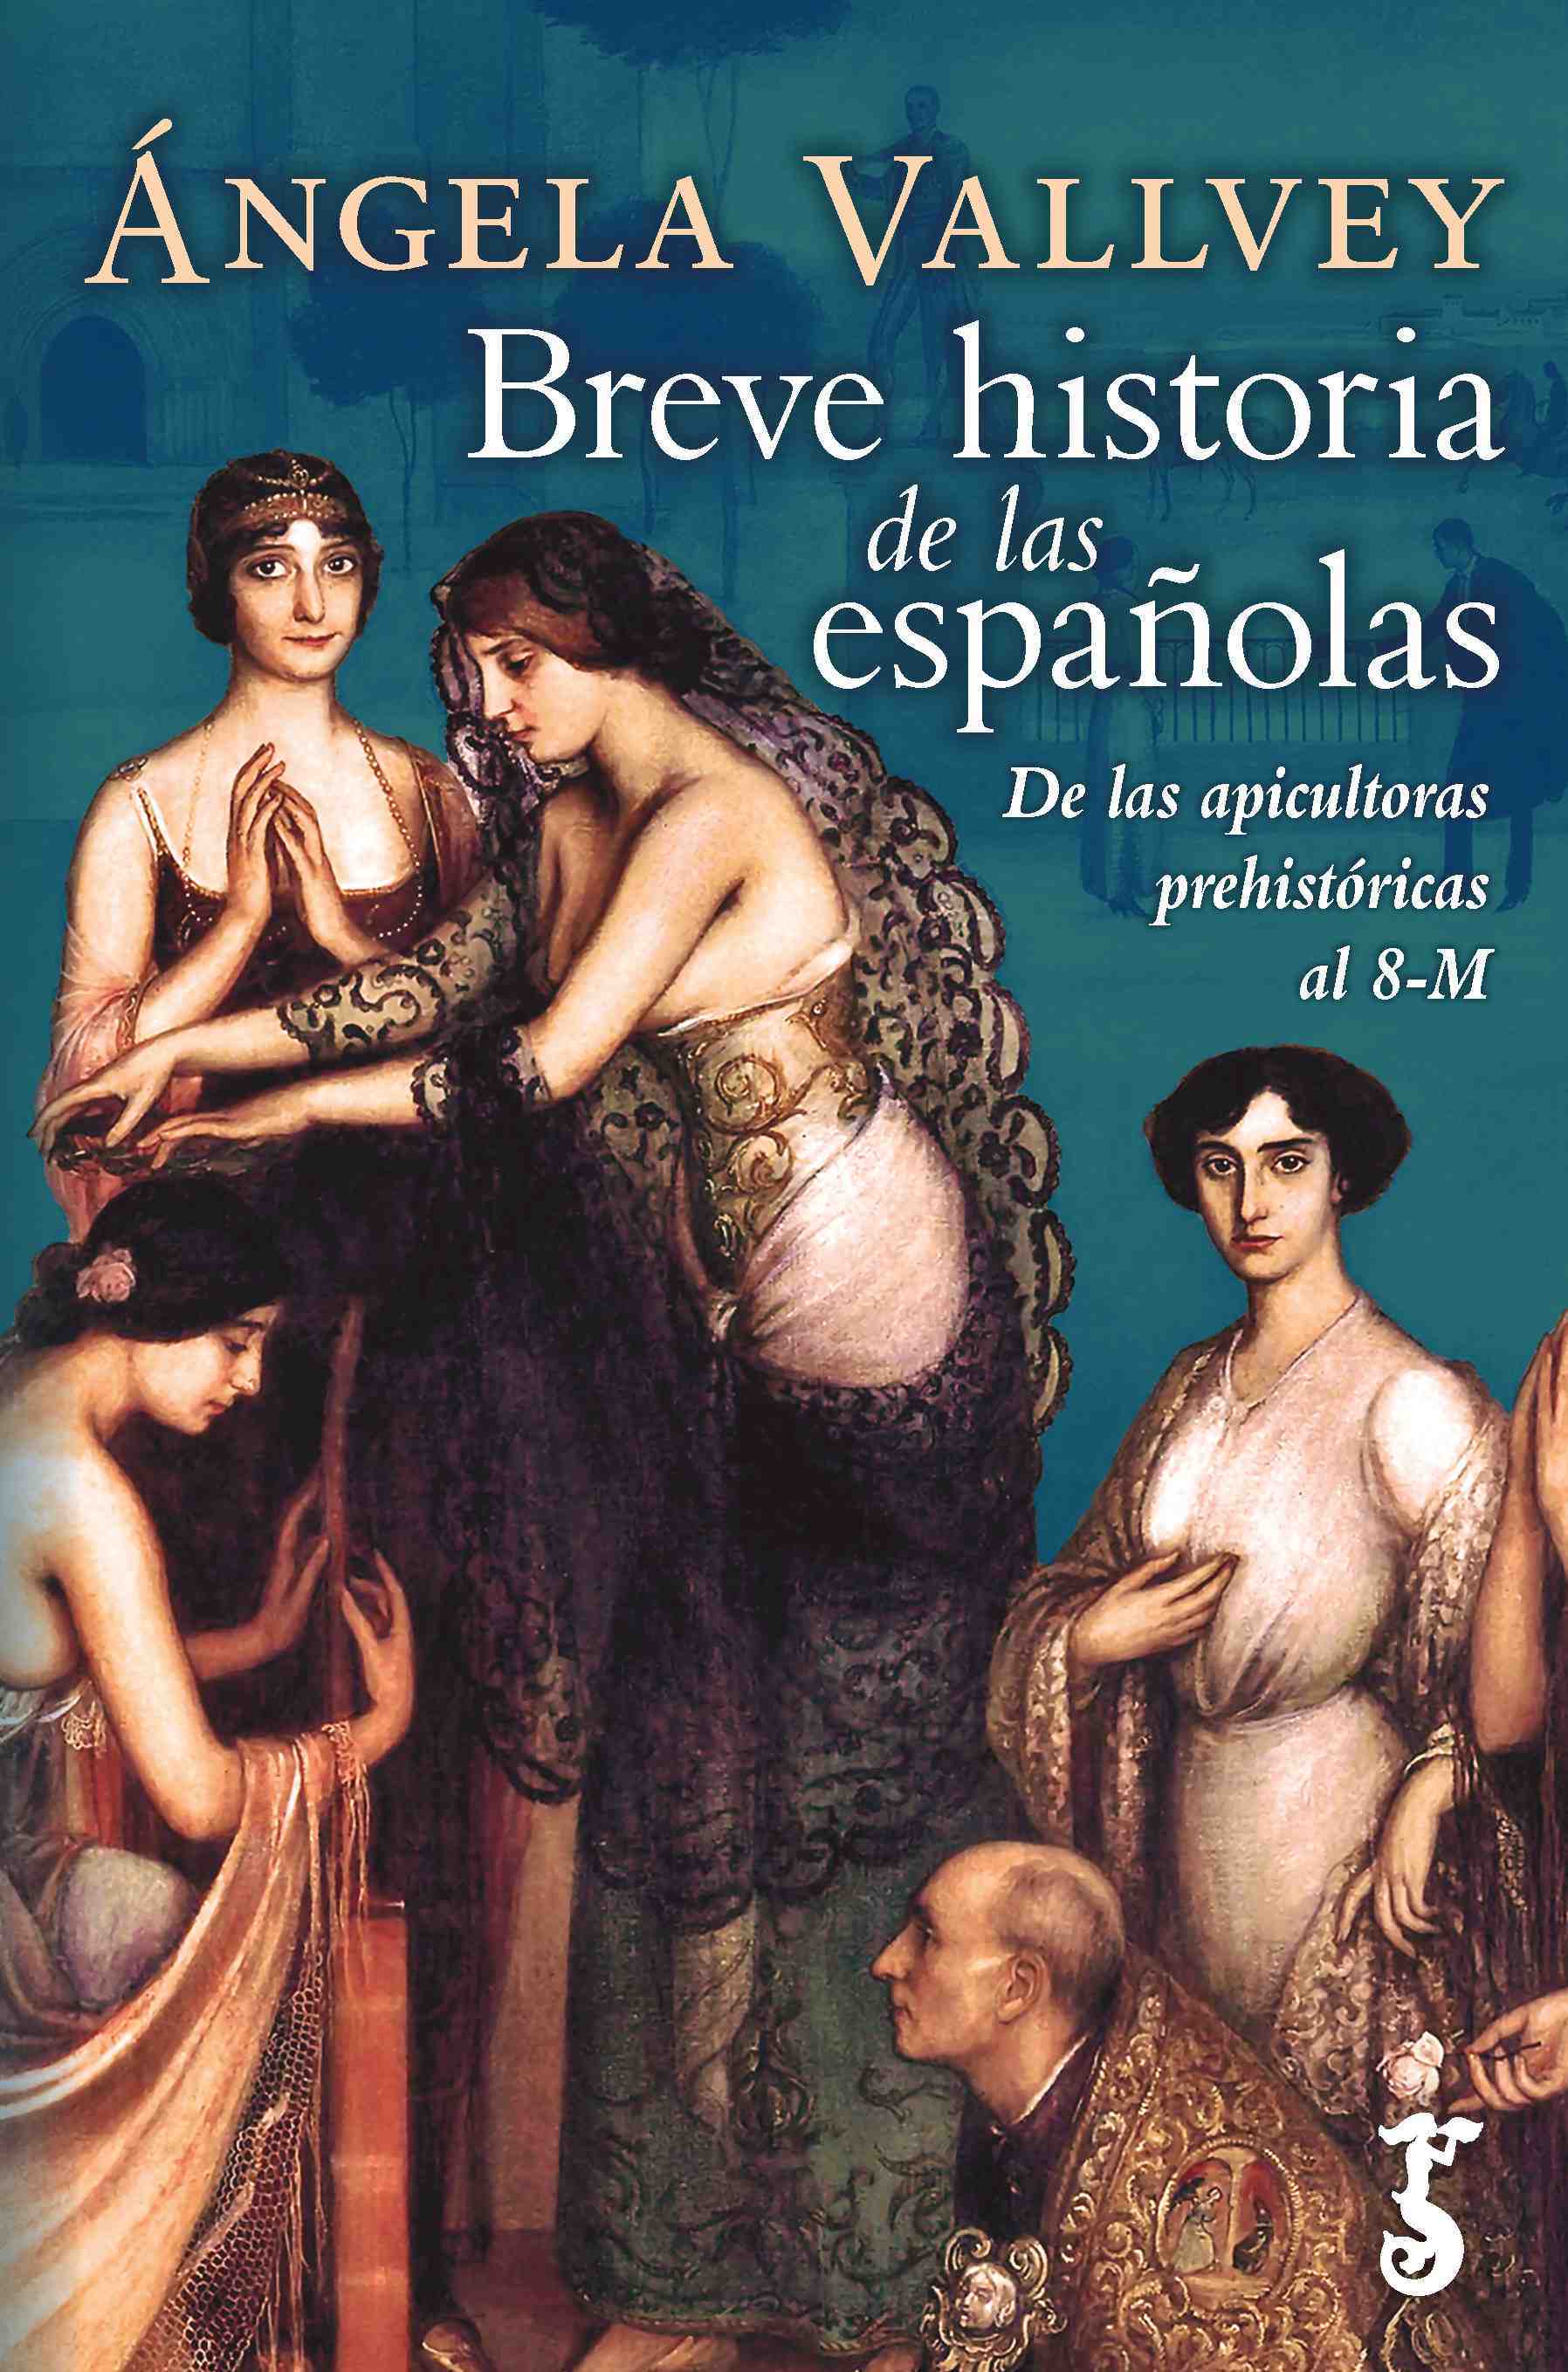 Portada del libro BREVE HISTORIA DE LAS ESPAÑOLAS: DE LAS APICULTORAS PREHISTORICAS AL 8